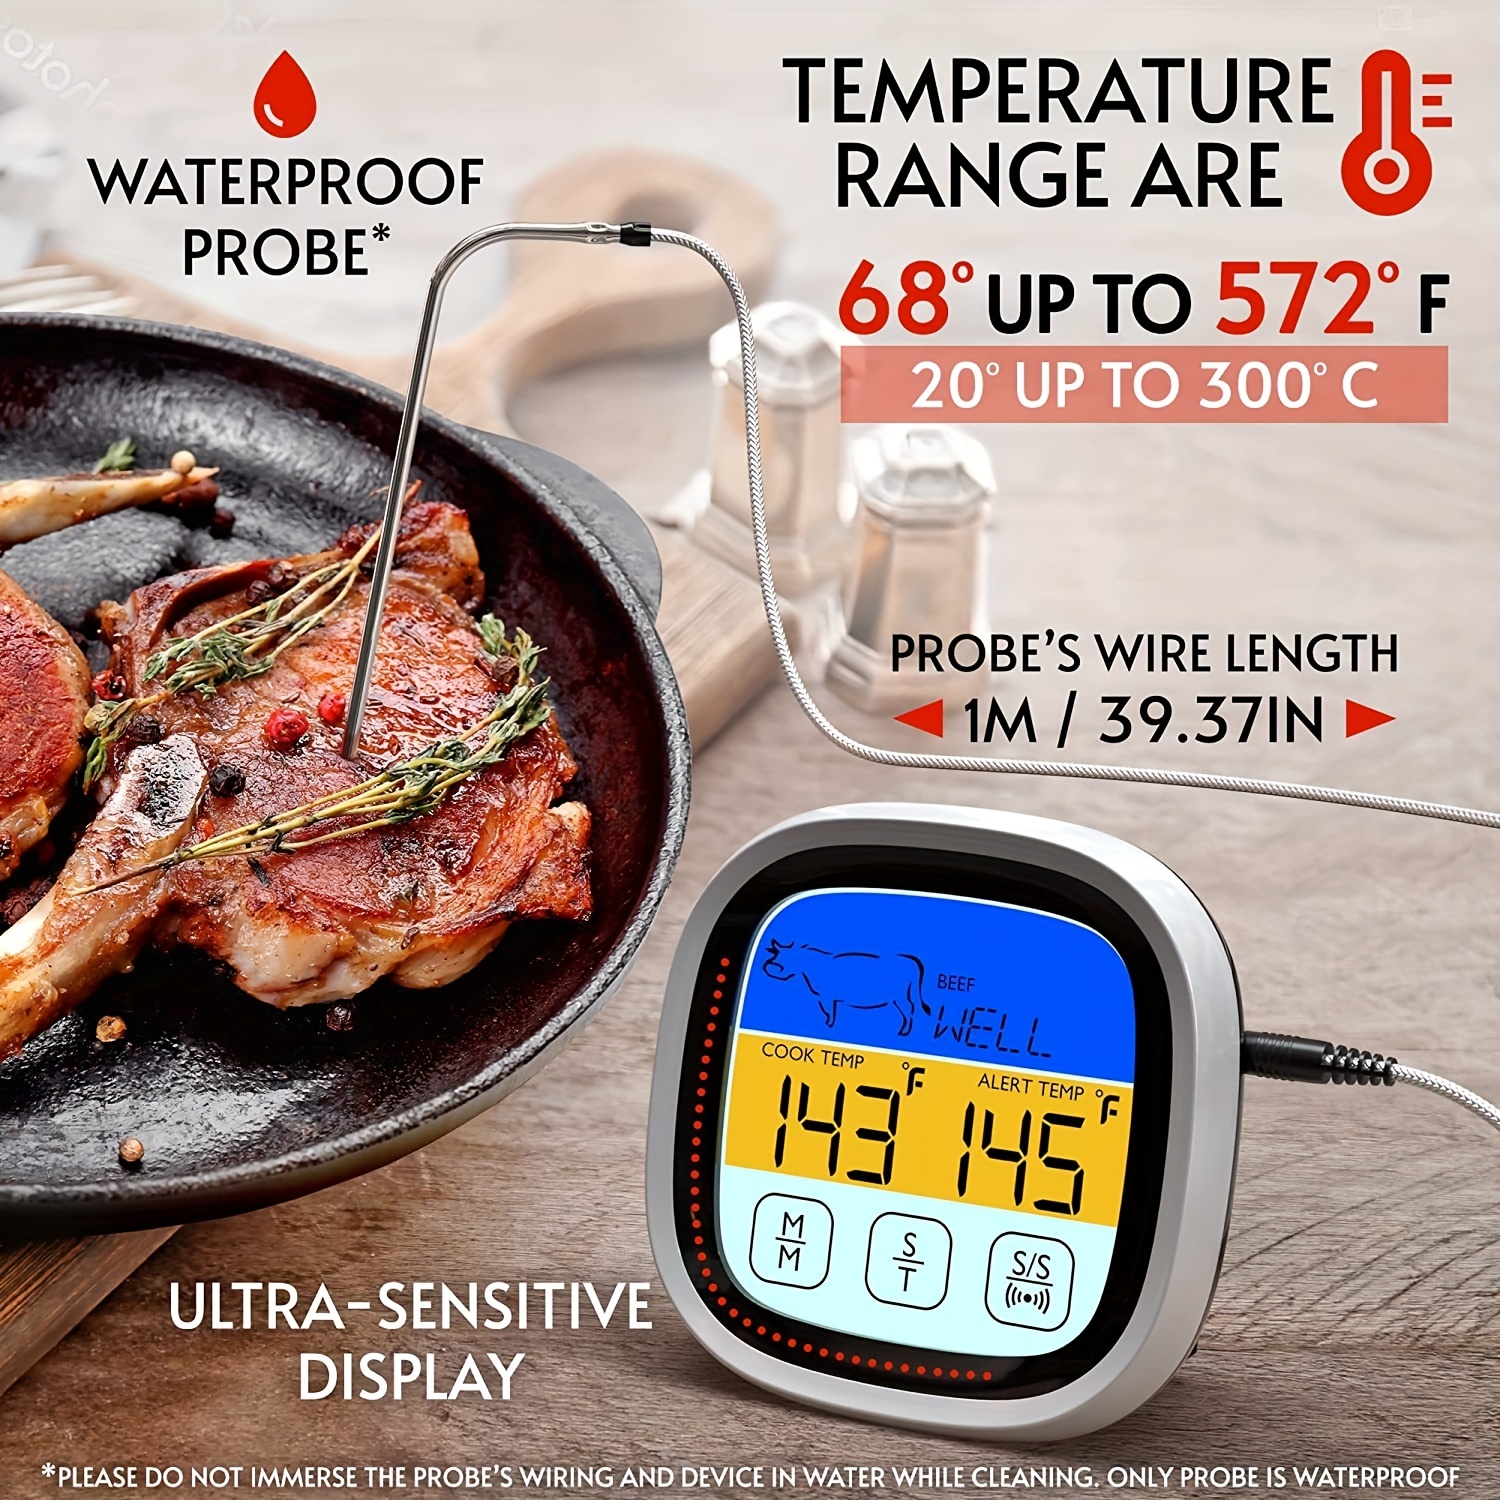 Termometro digitale TP101 da cucina per alimenti bevande -50°C a 300°